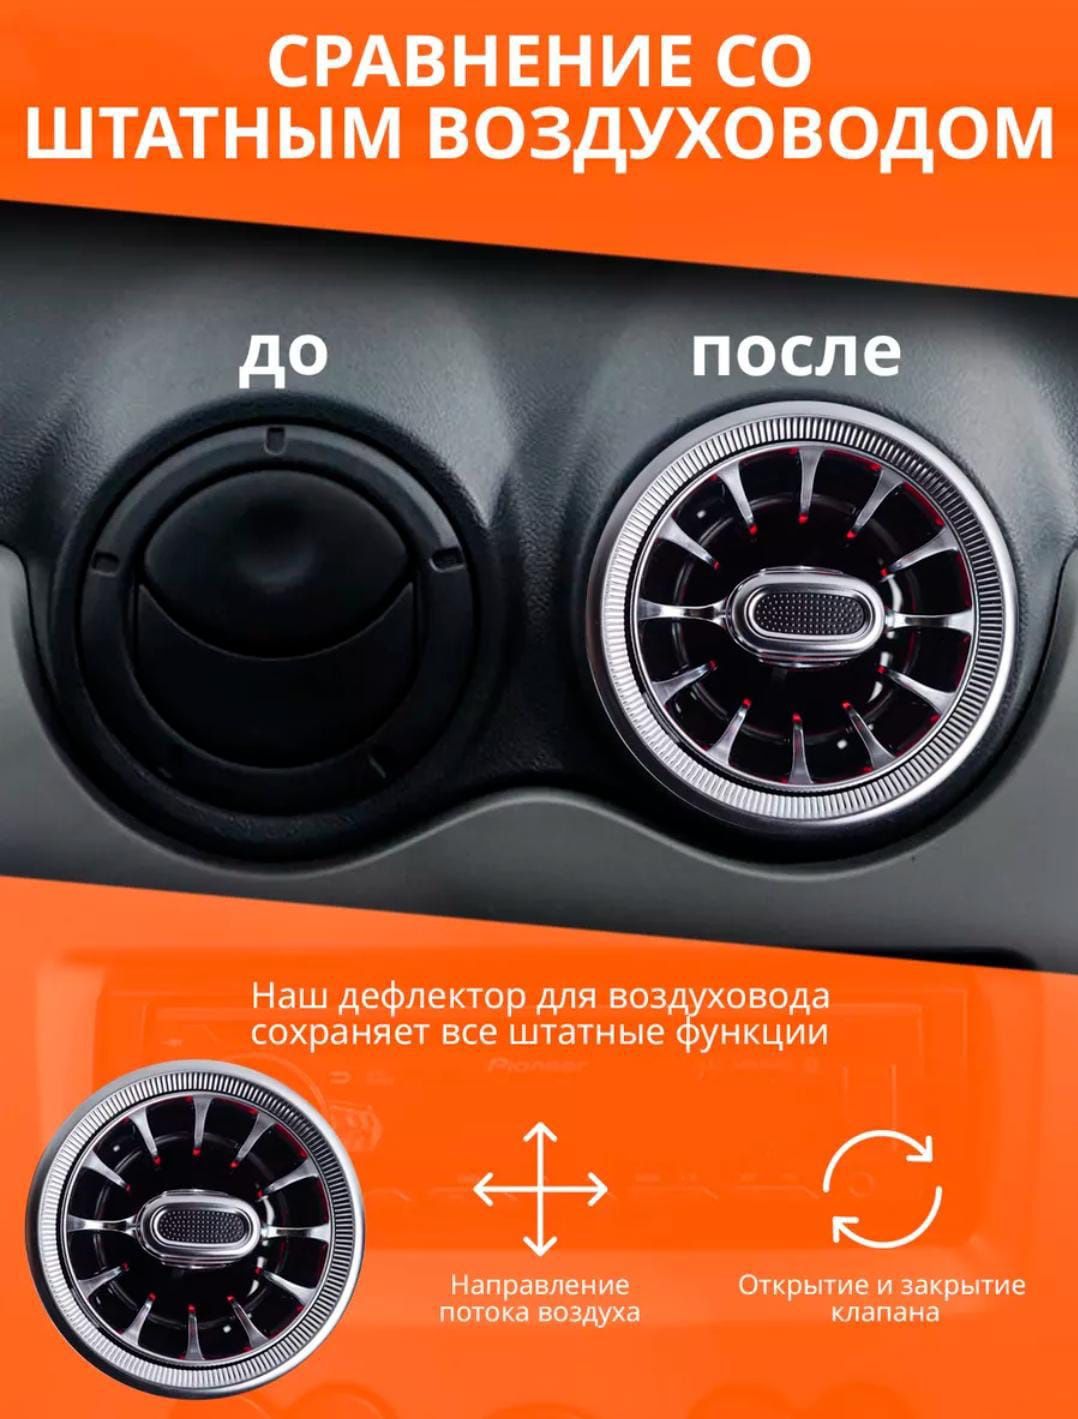 Дефлекторы Воздуховода Универсальные Сопла Стиль AMG Продажа Установка